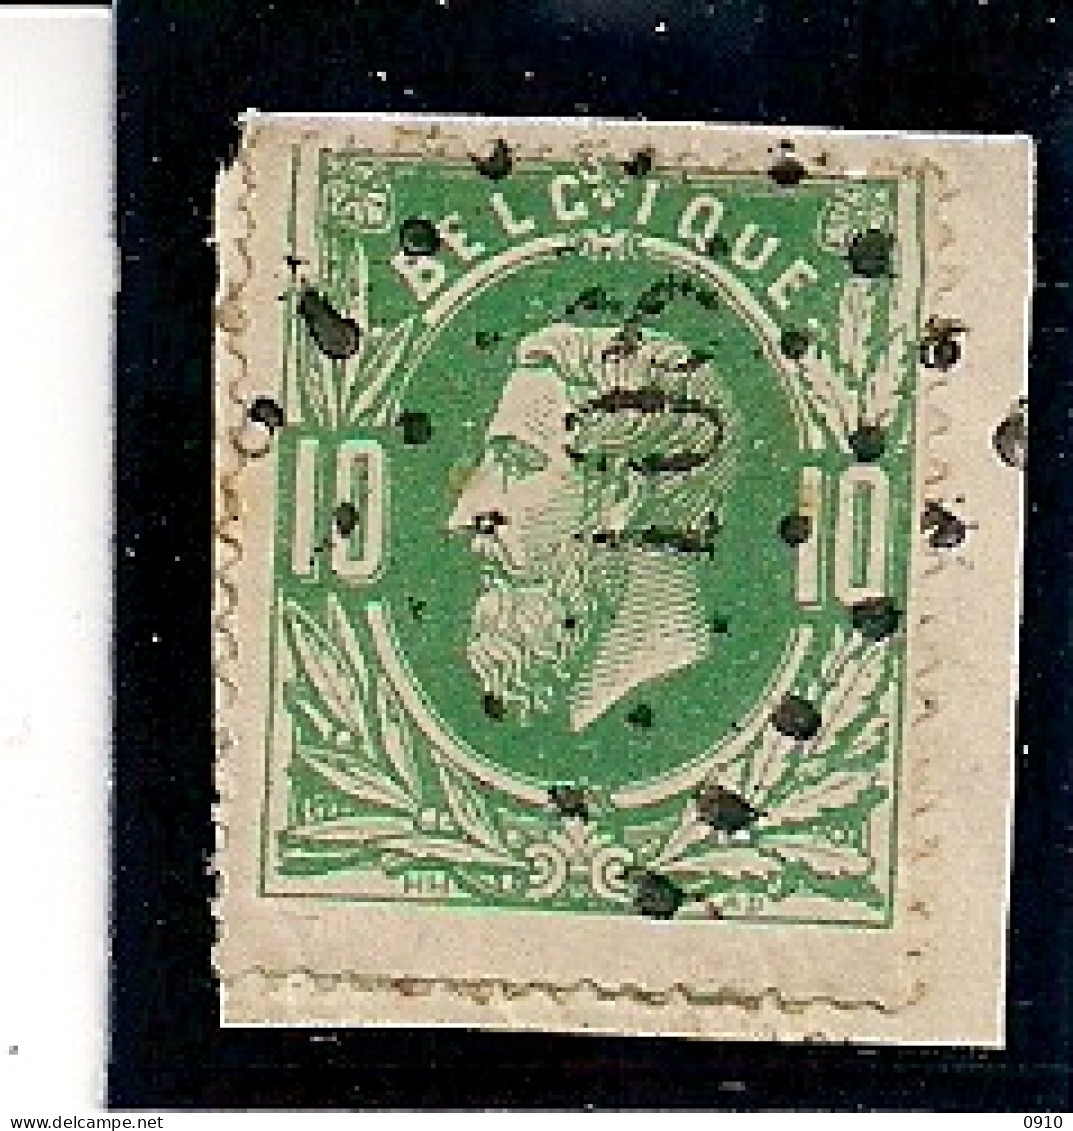 30-LP108 EECLO OP FRAGMENT - 1869-1883 Leopold II